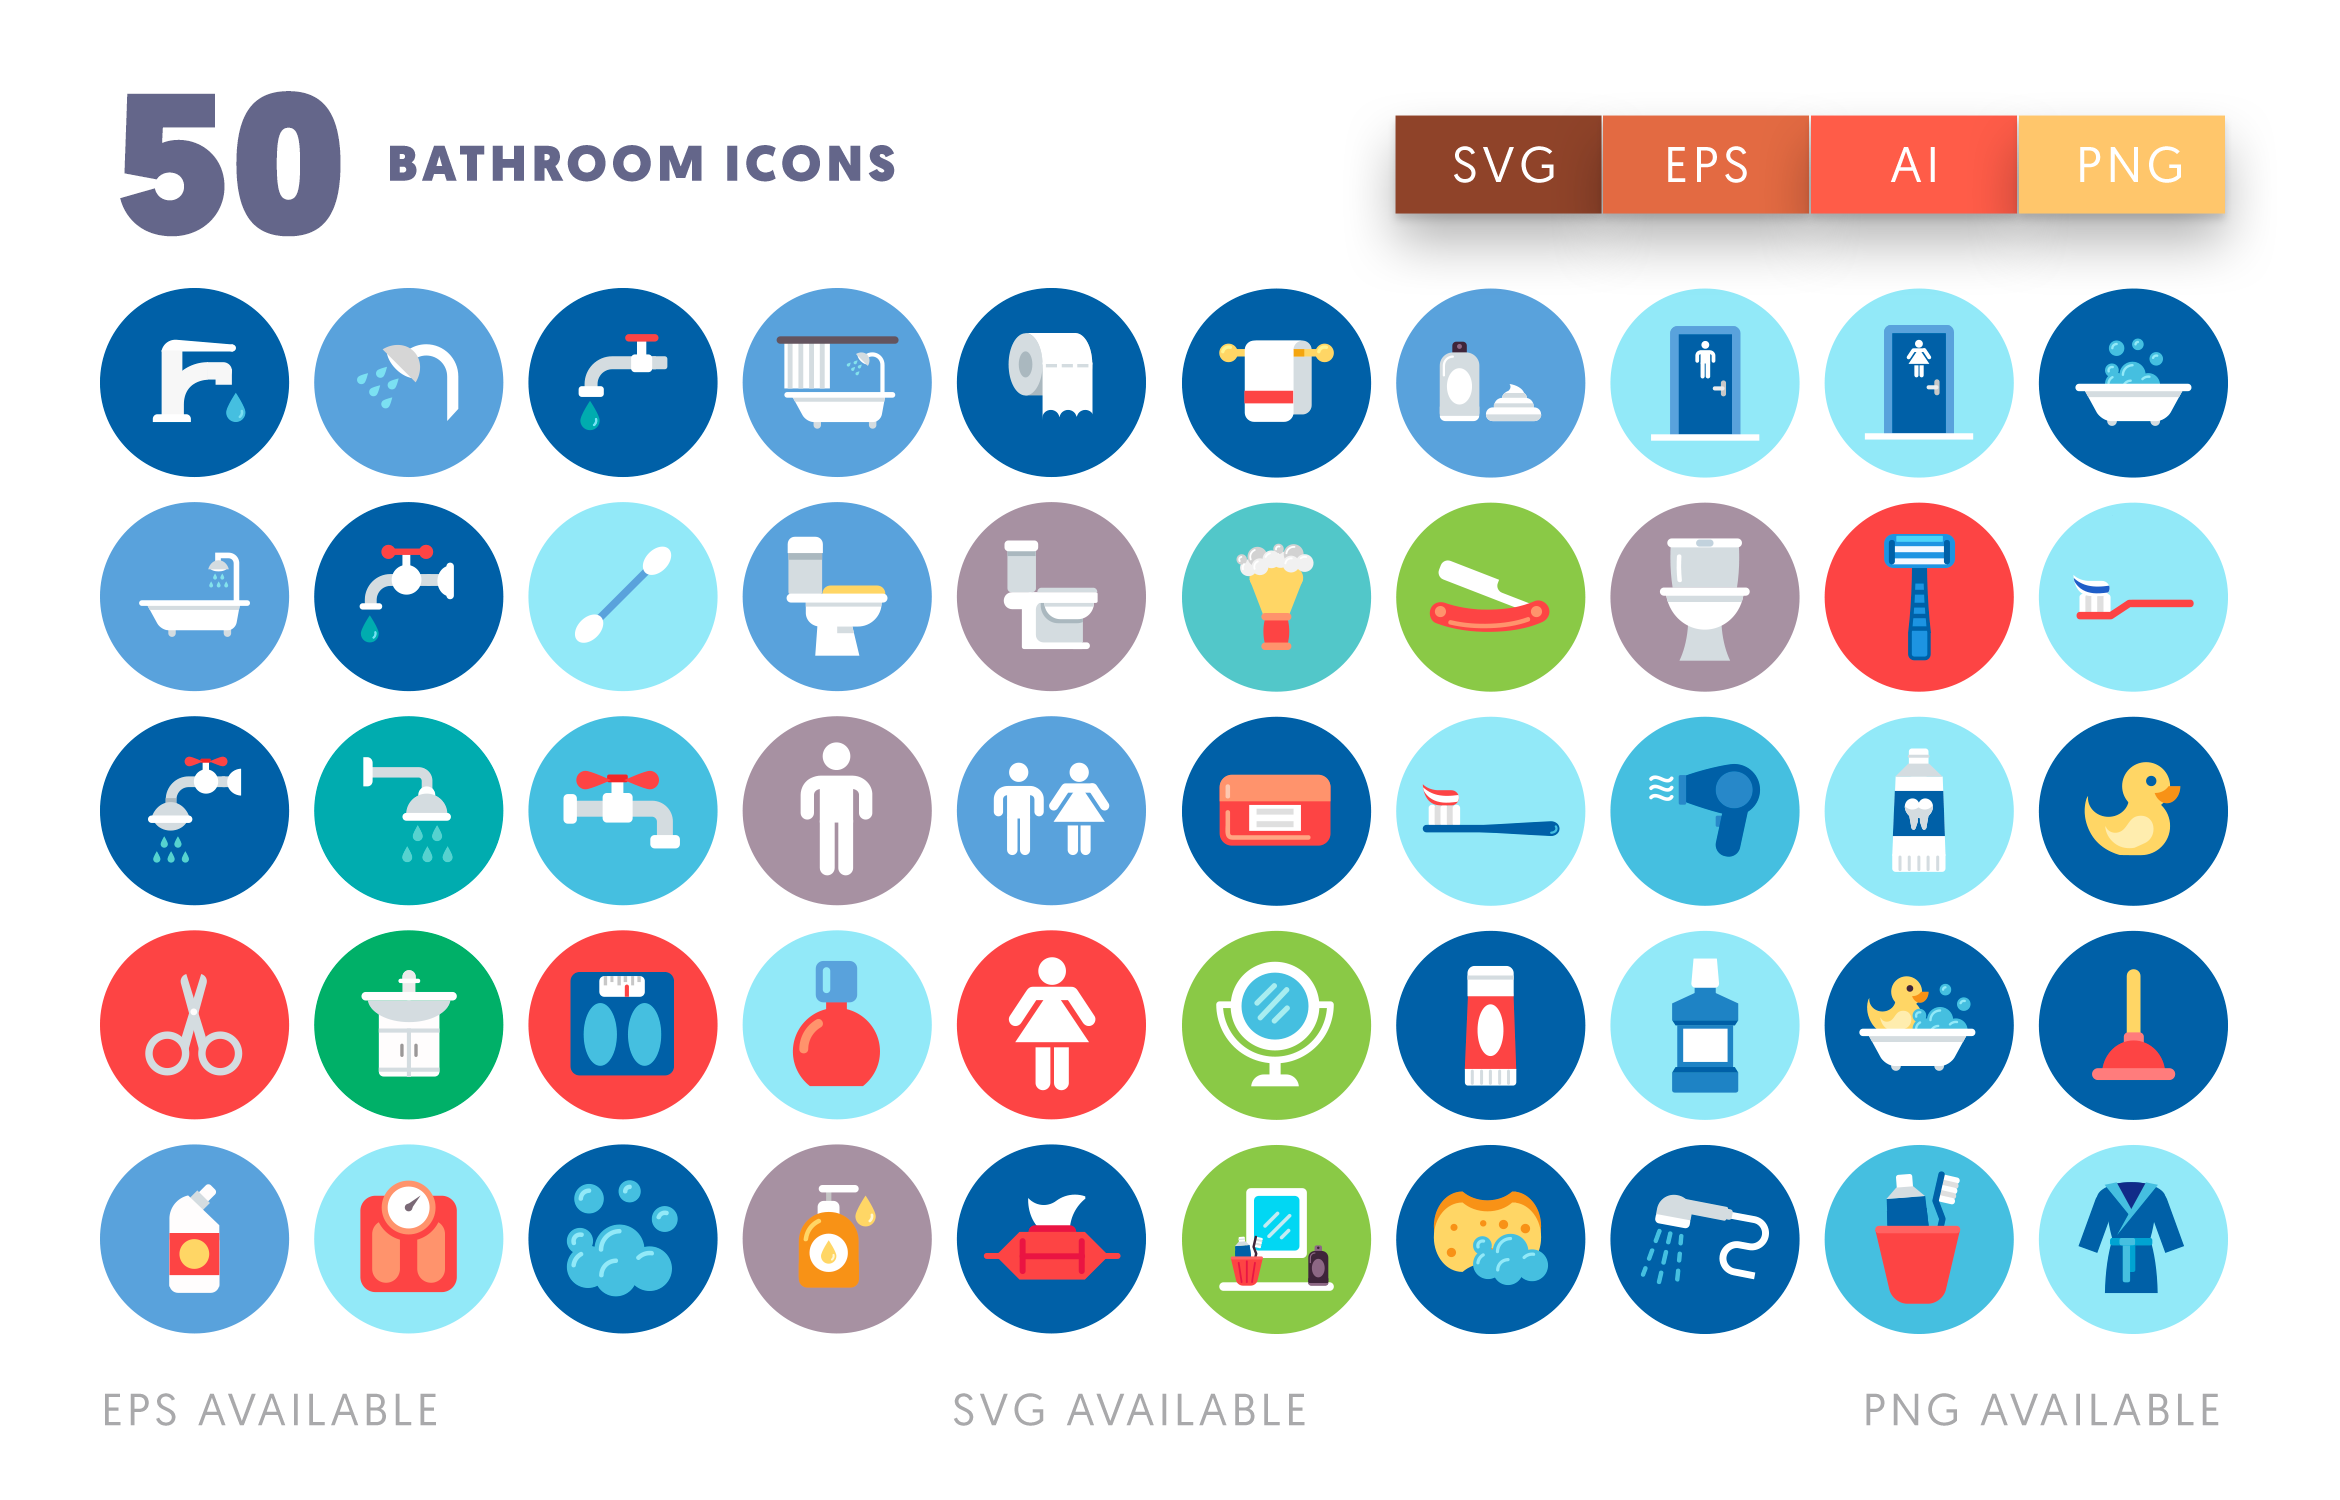 50 Bathroom Icons